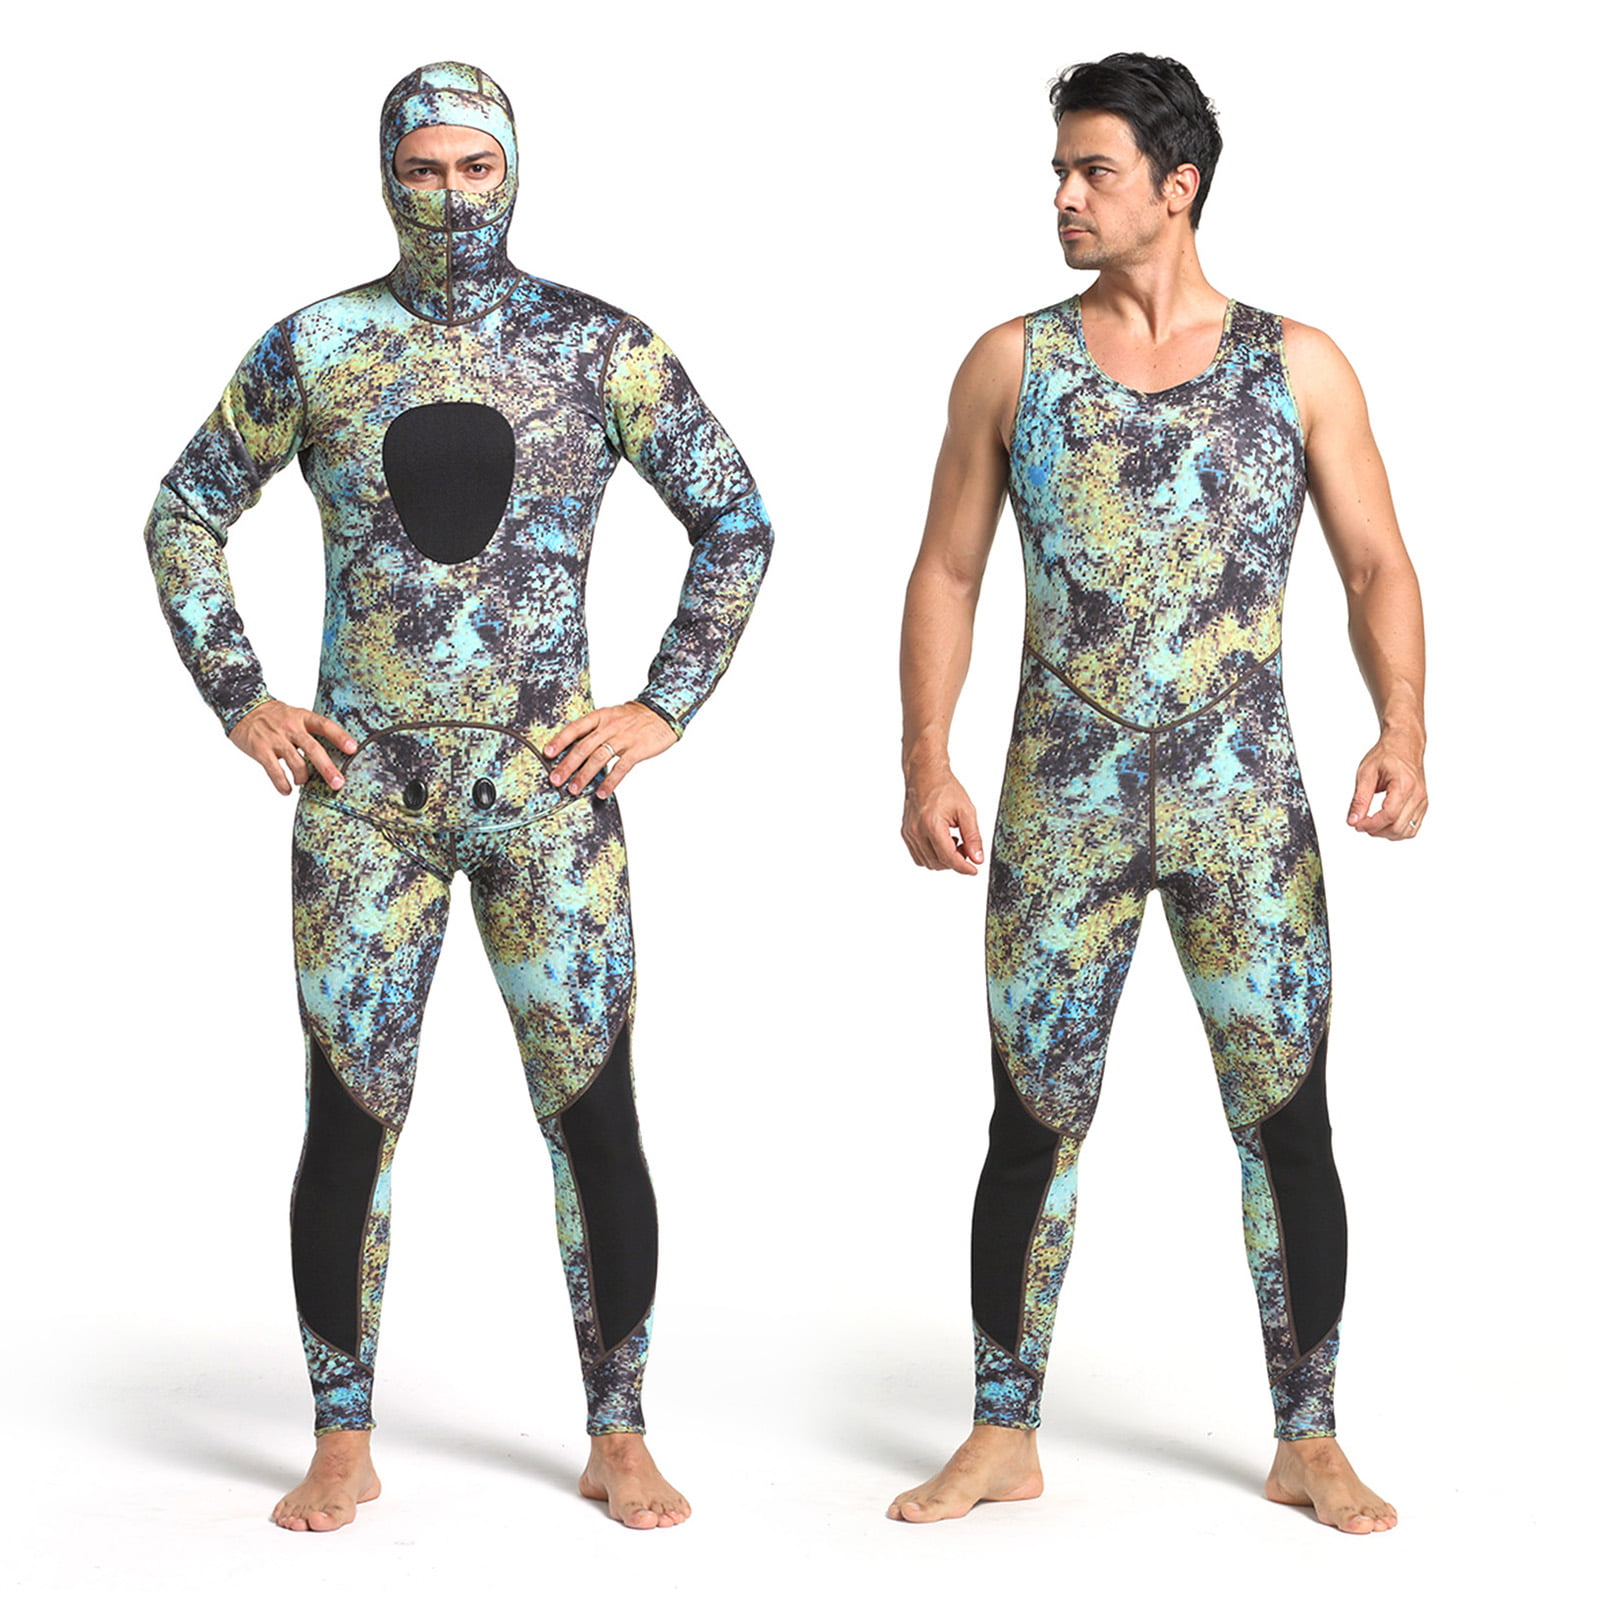 Details about   Hooded Wetsuit Ultimate Surf Dive Men Diving Suit Full Body Scuba Jumpsuit 